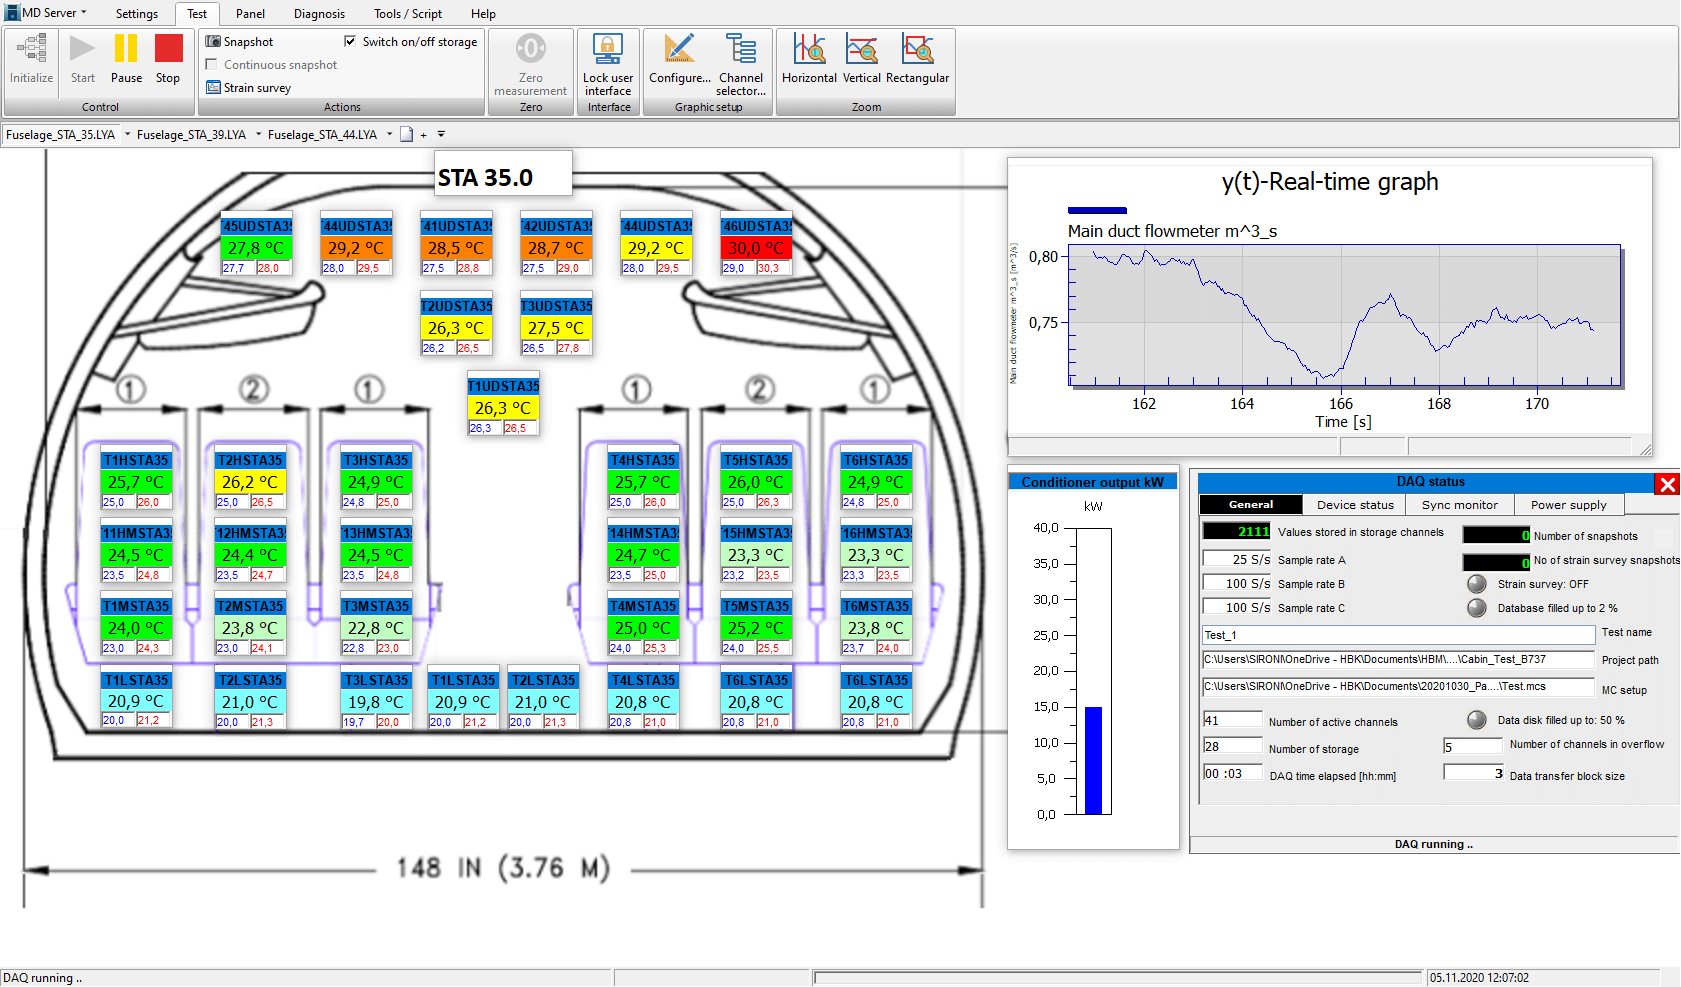 Image Temperature measurement evaluation in catman Enterprise